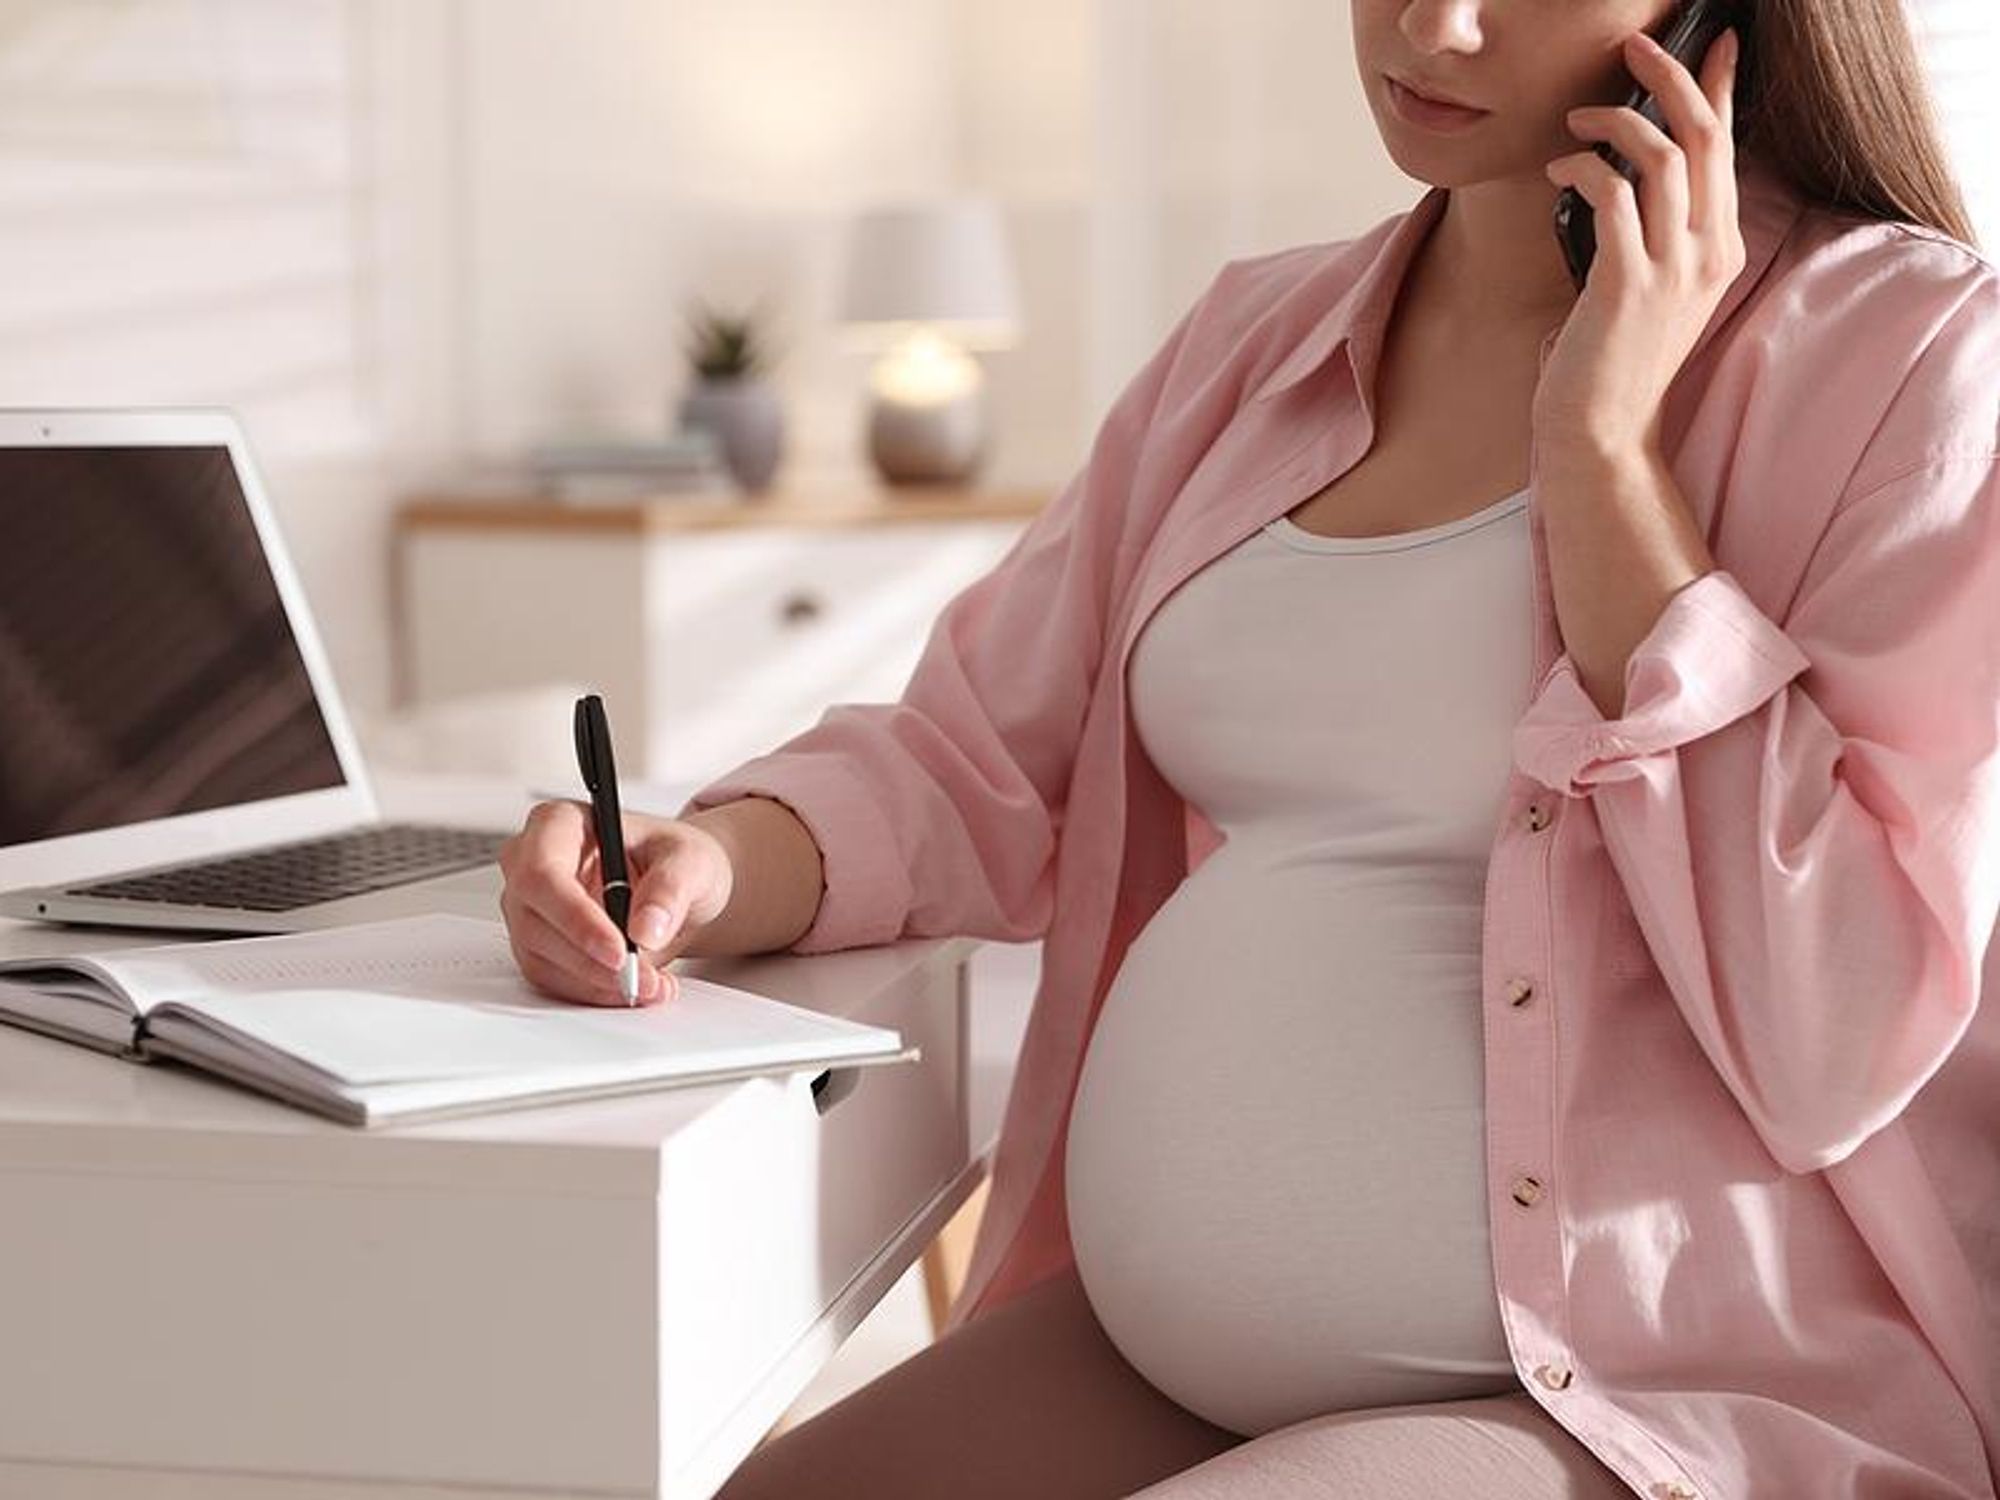 Pregnant woman makes a phone call